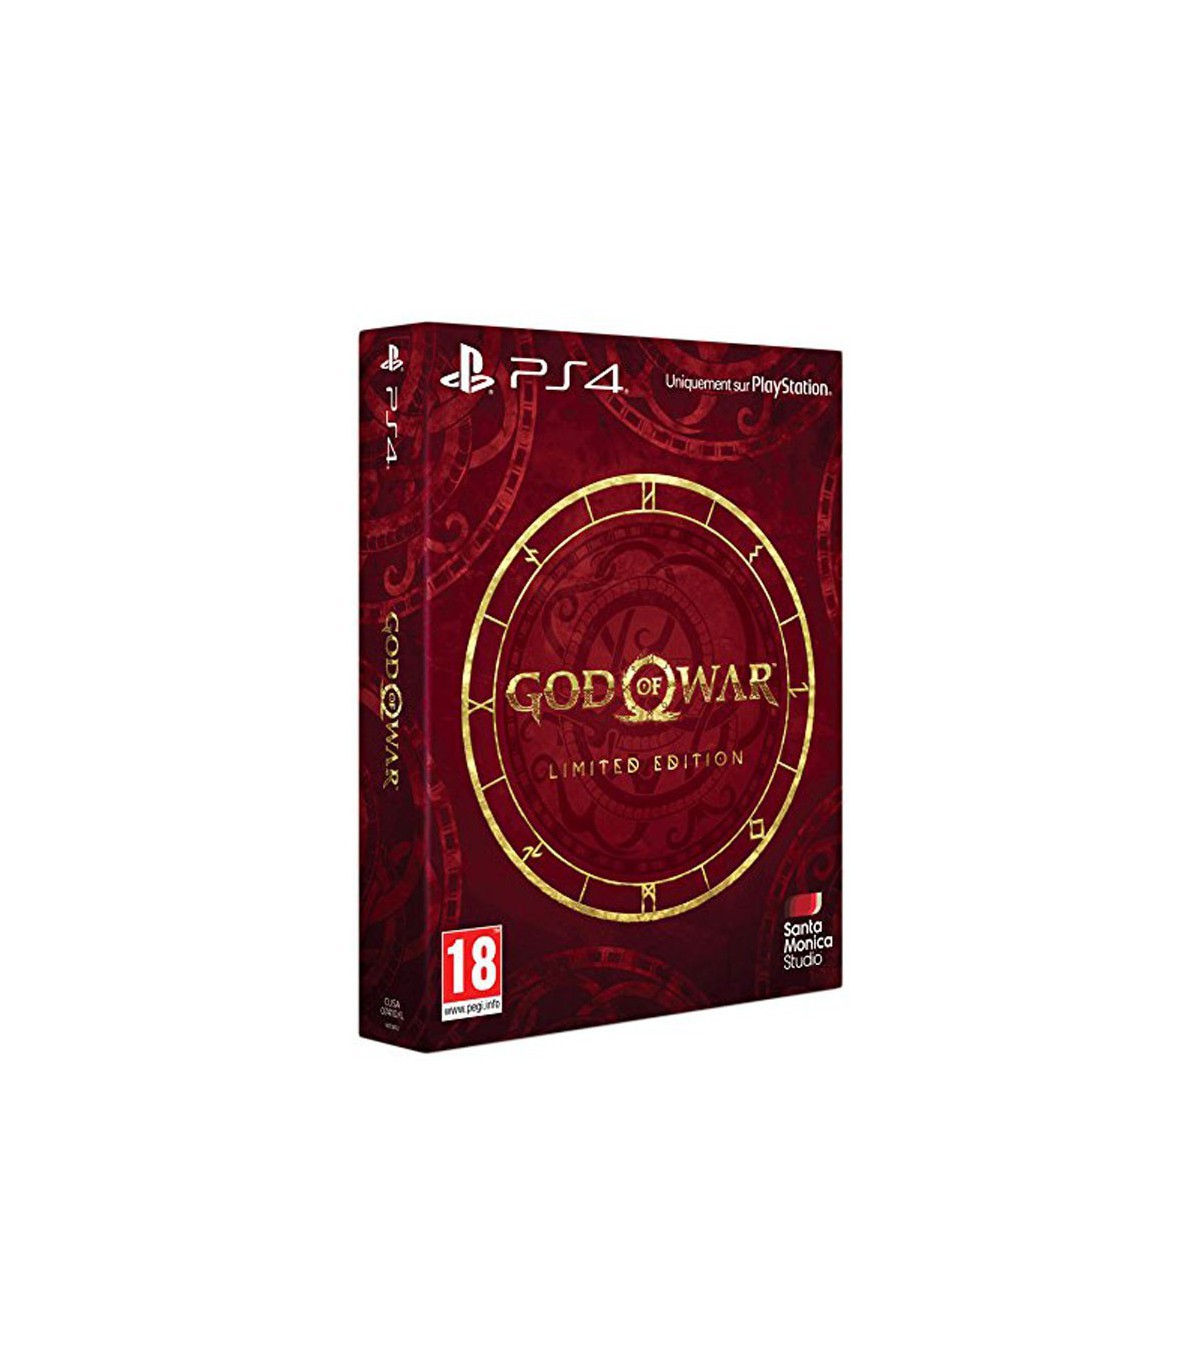 نسخه لیمیتد ادیشن بازی گاد او وار God of War Limited Edition - پلی استیشن 4